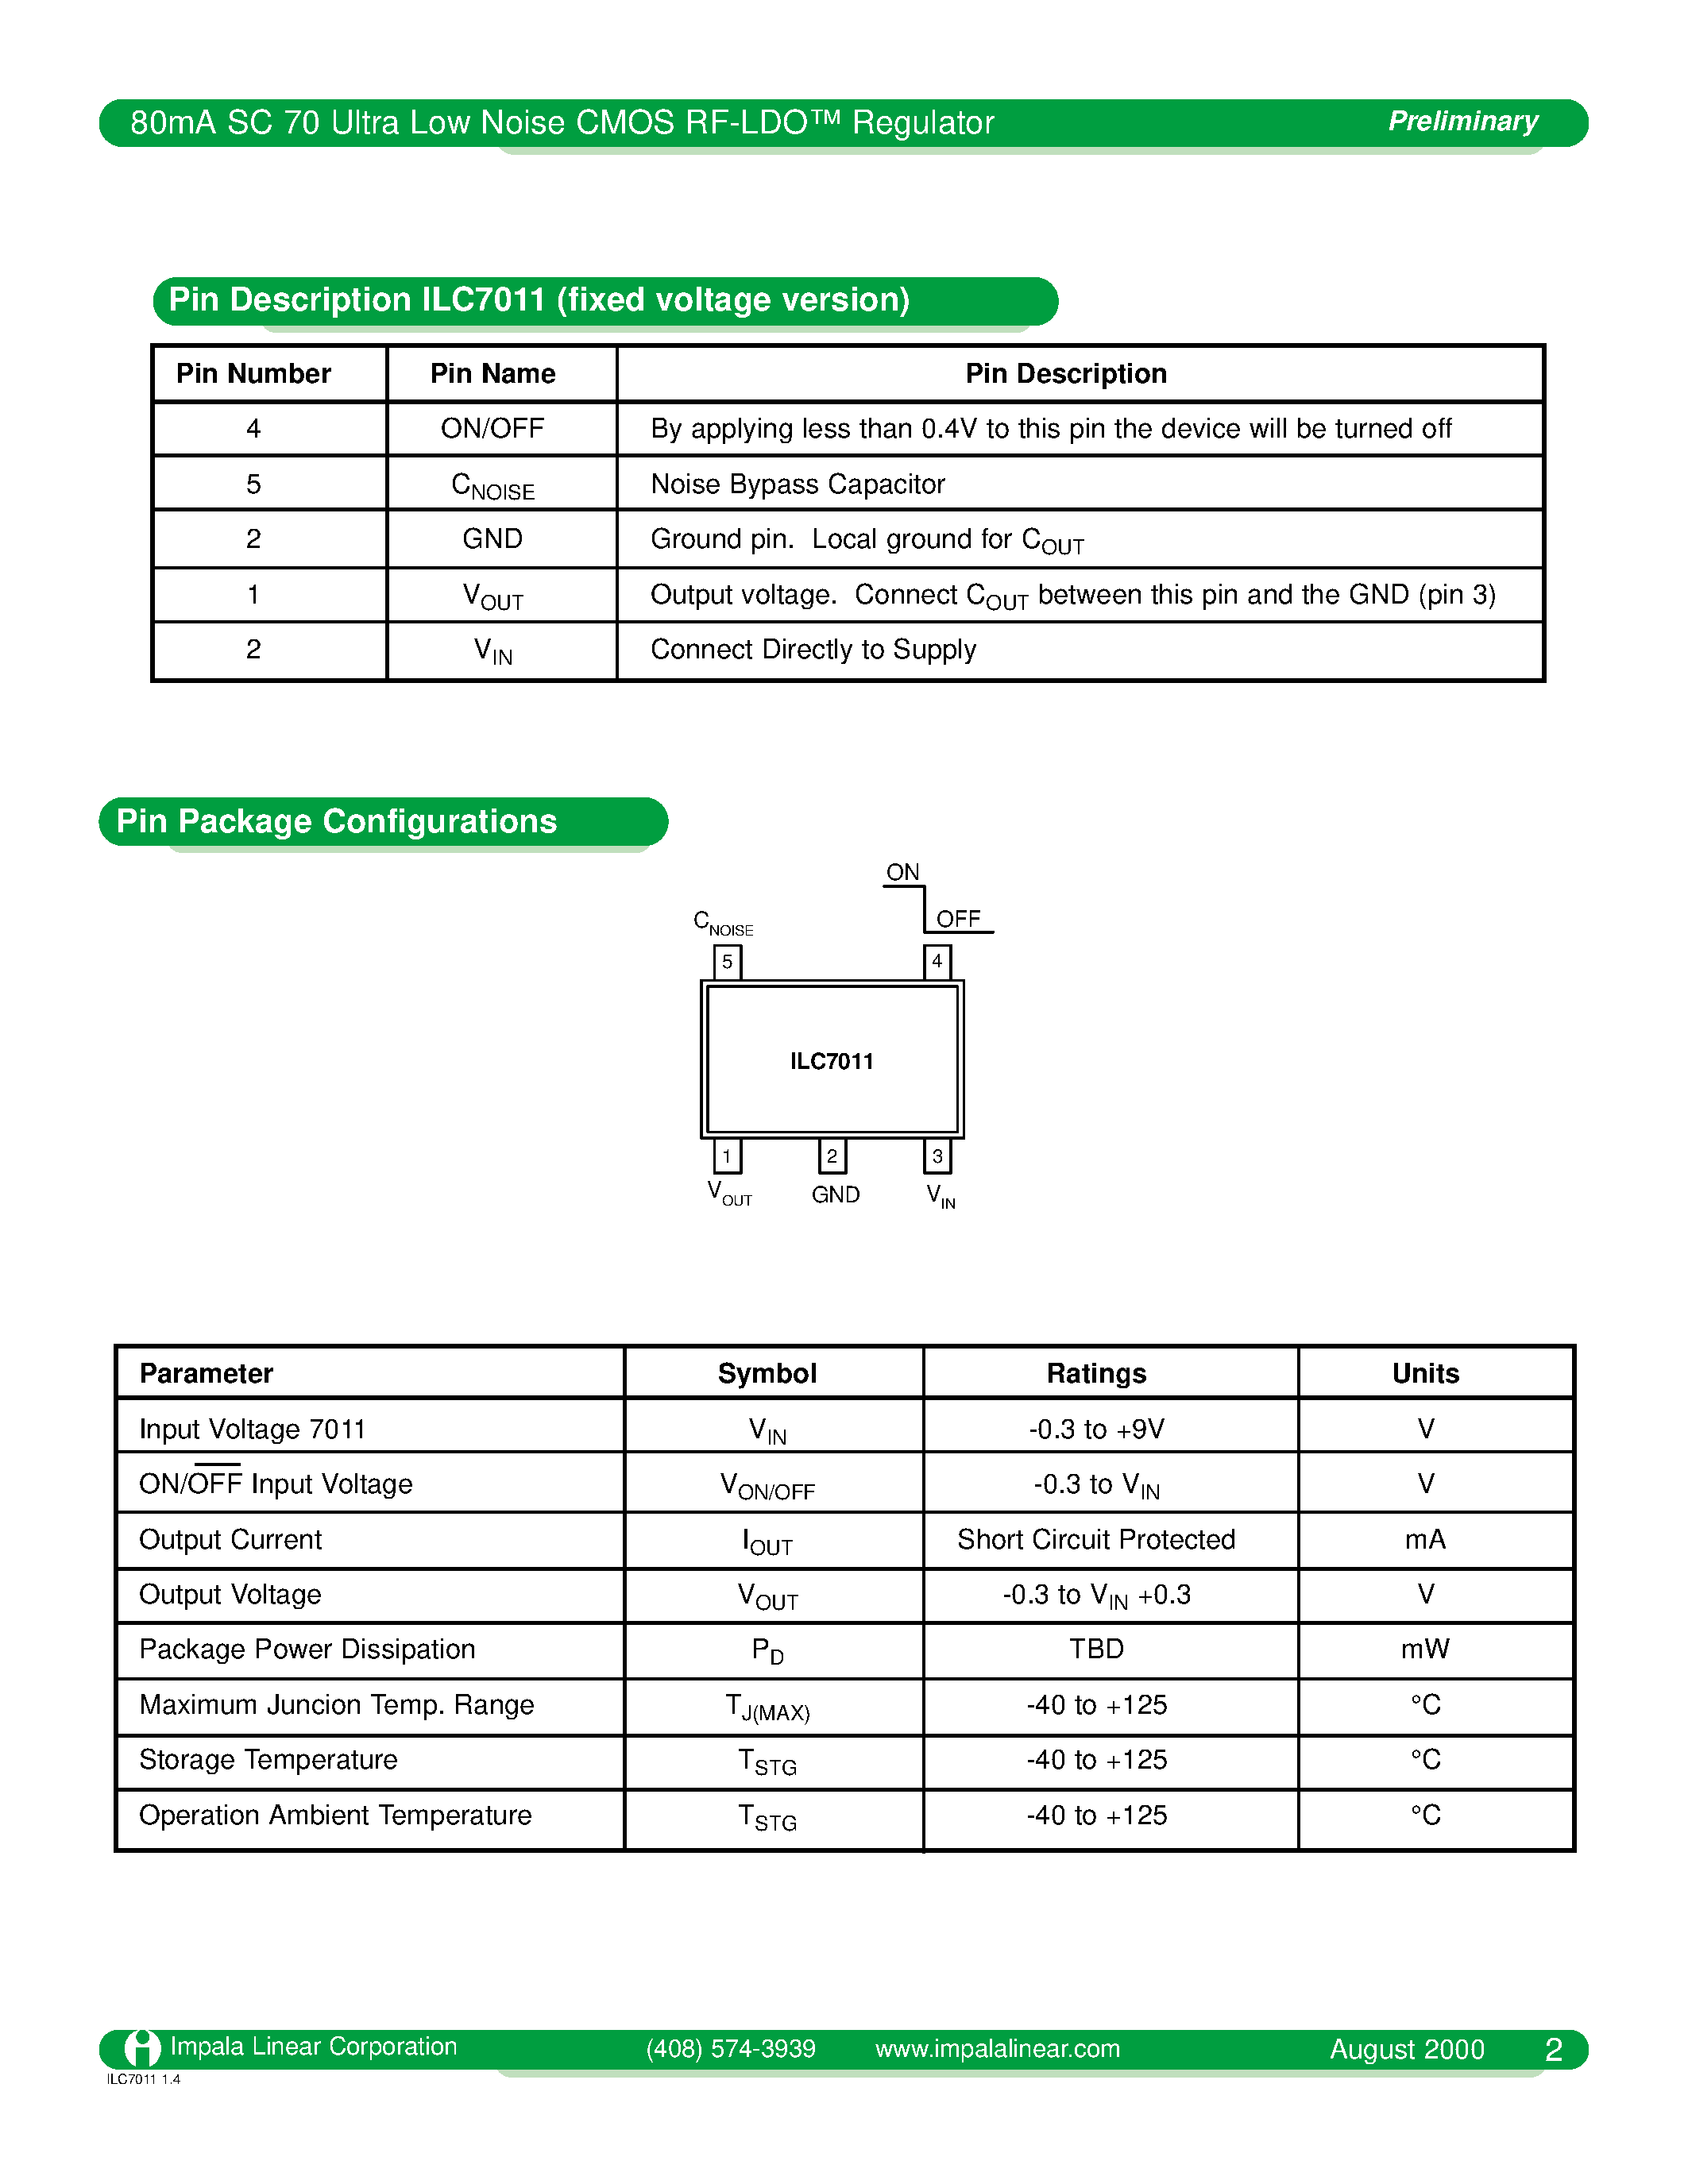 Даташит ILC7011C5-47 - 80mA SC70 Ultra Low Noise CMOS RF-LDO Regulator страница 2